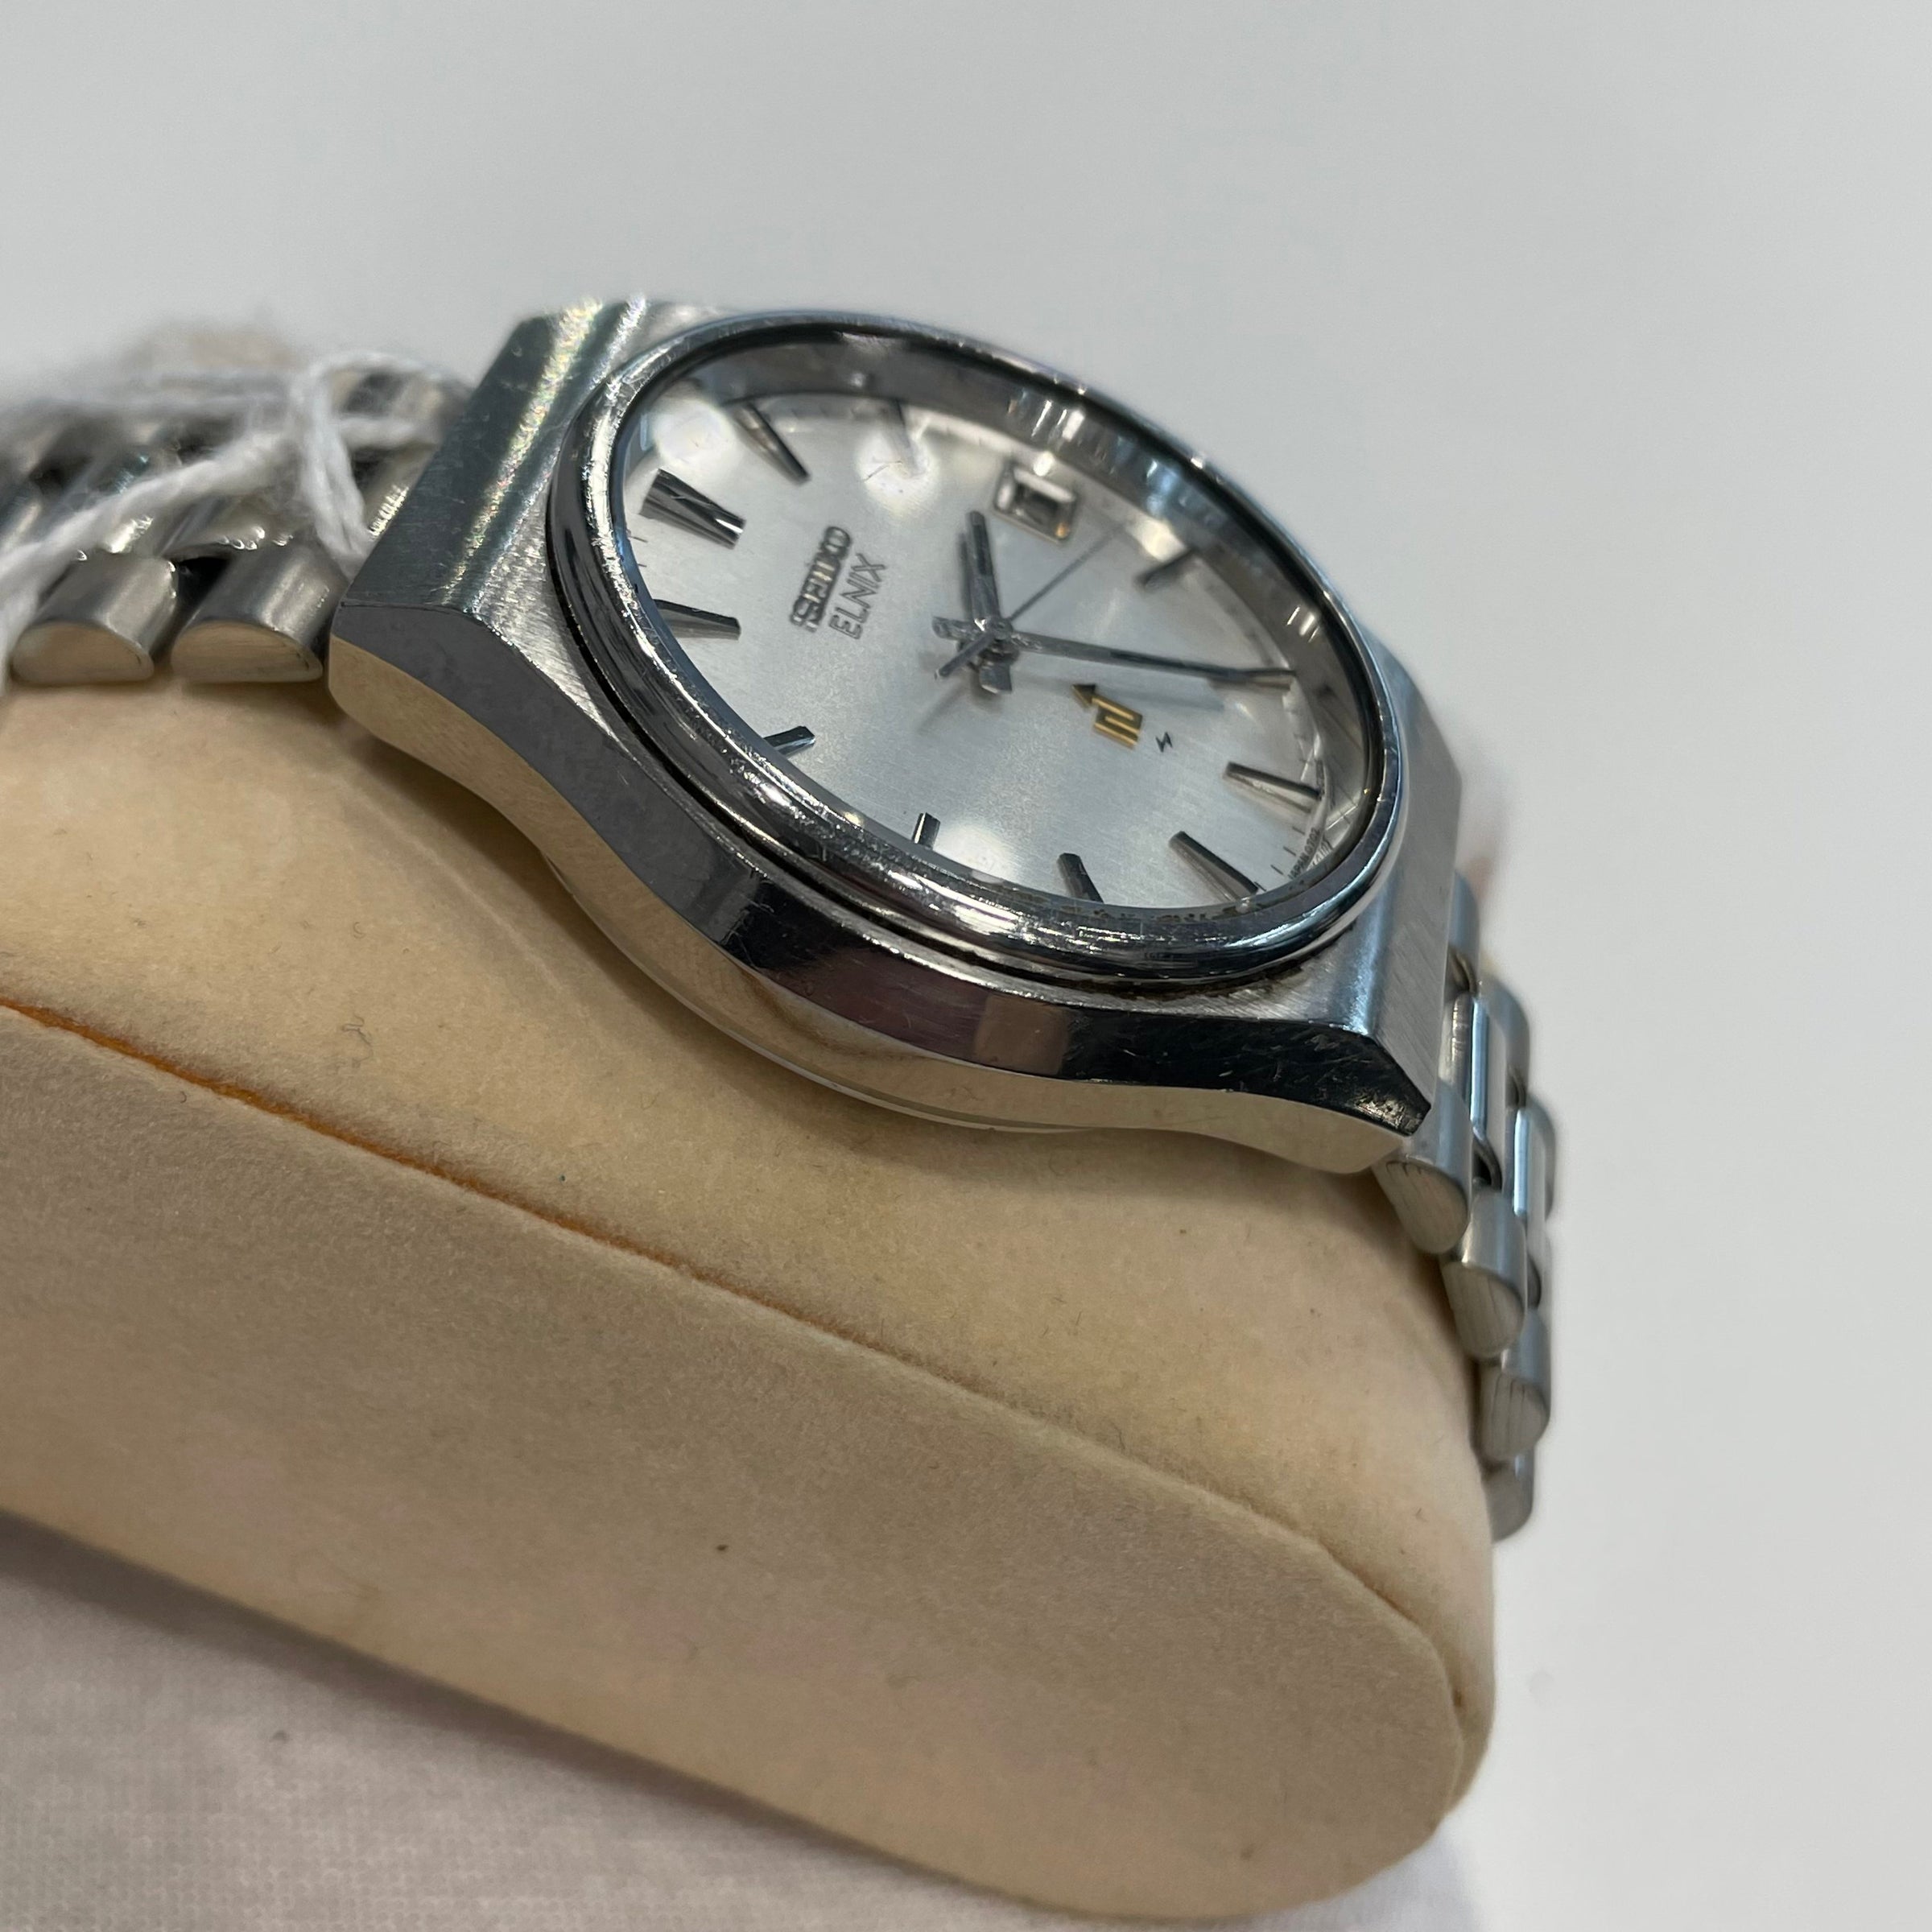 SEIKO ELNIX 0702-8020 腕時計 電磁テンプ式デイト - 腕時計(アナログ)